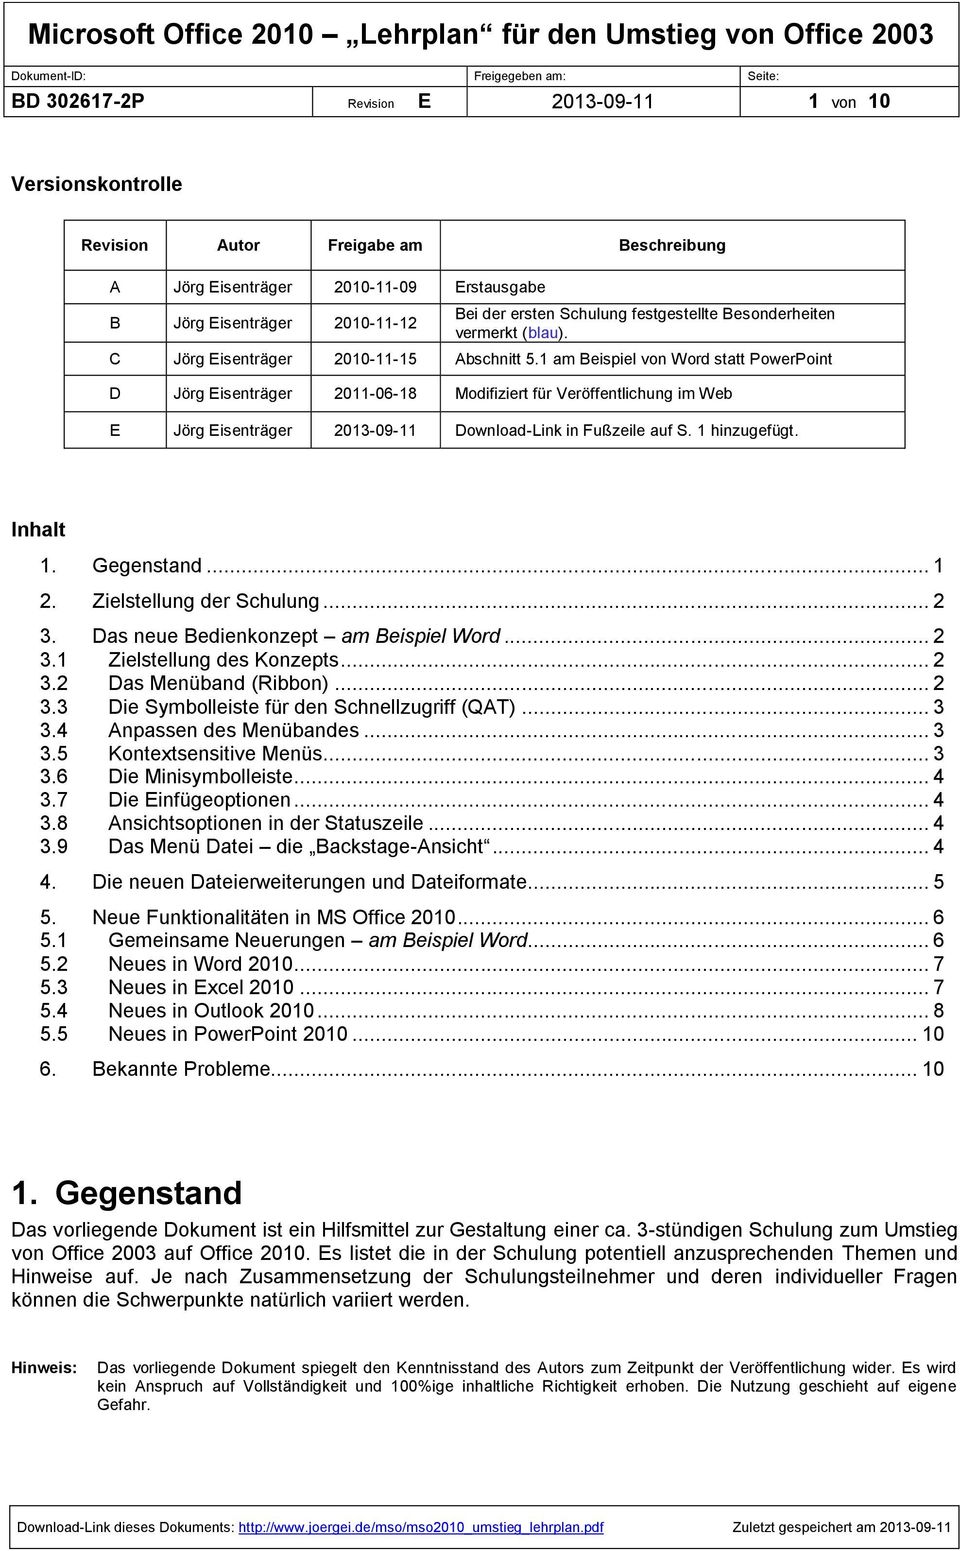 1 am Beispiel von Word statt PowerPoint D Jörg Eisenträger 2011-06-18 Modifiziert für Veröffentlichung im Web E Jörg Eisenträger 2013-09-11 Download-Link in Fußzeile auf S. 1 hinzugefügt. Inhalt 1.